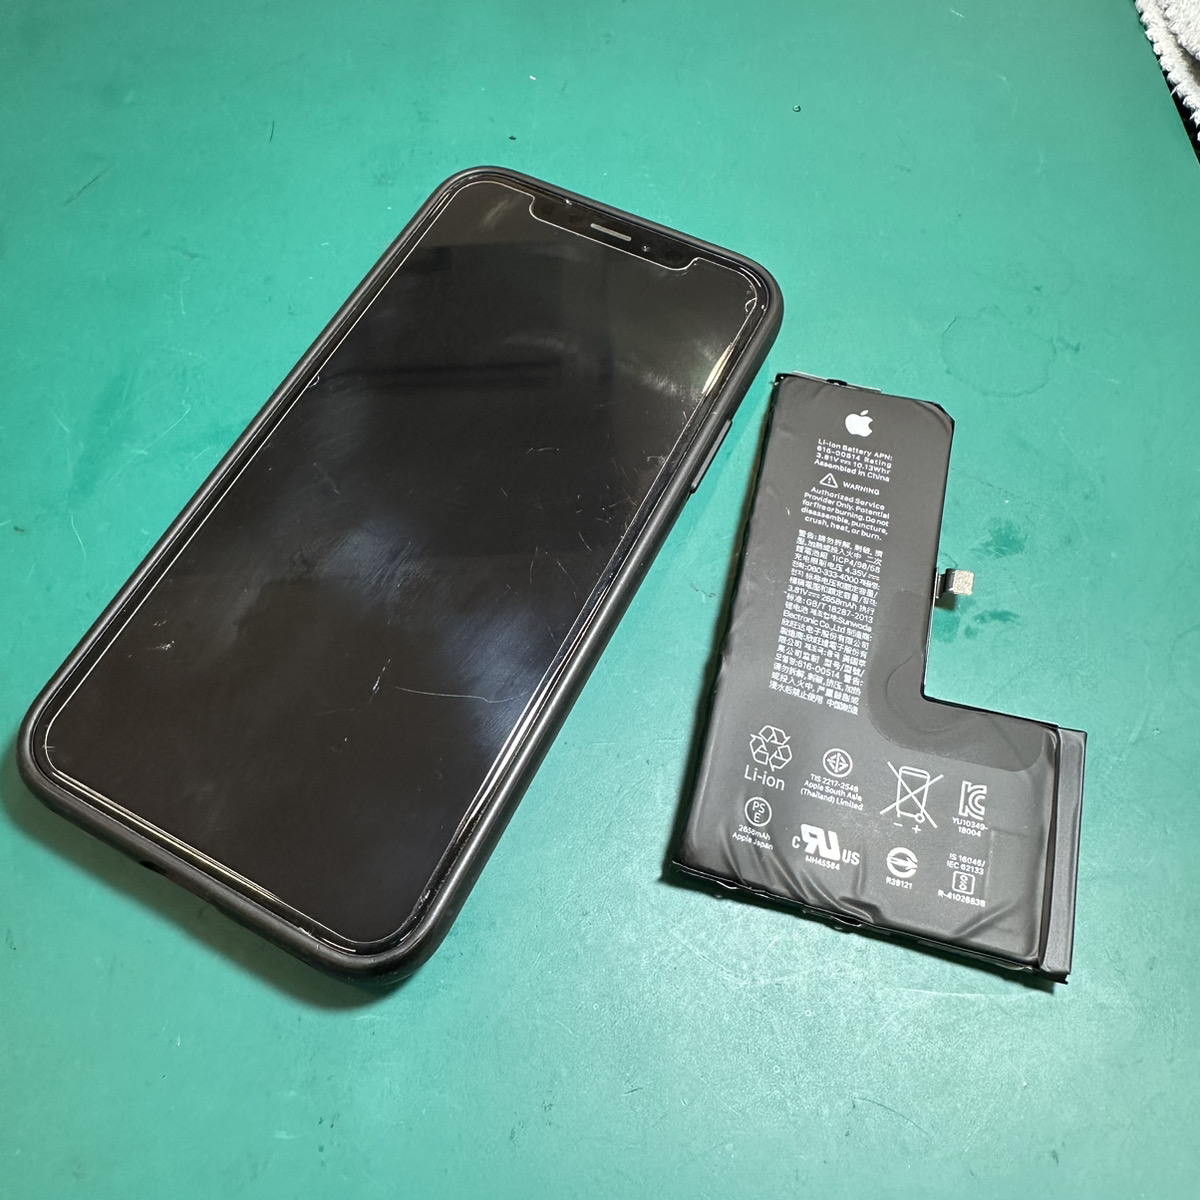 浦和原山店: iPhoneXsバッテリー修理6,180円